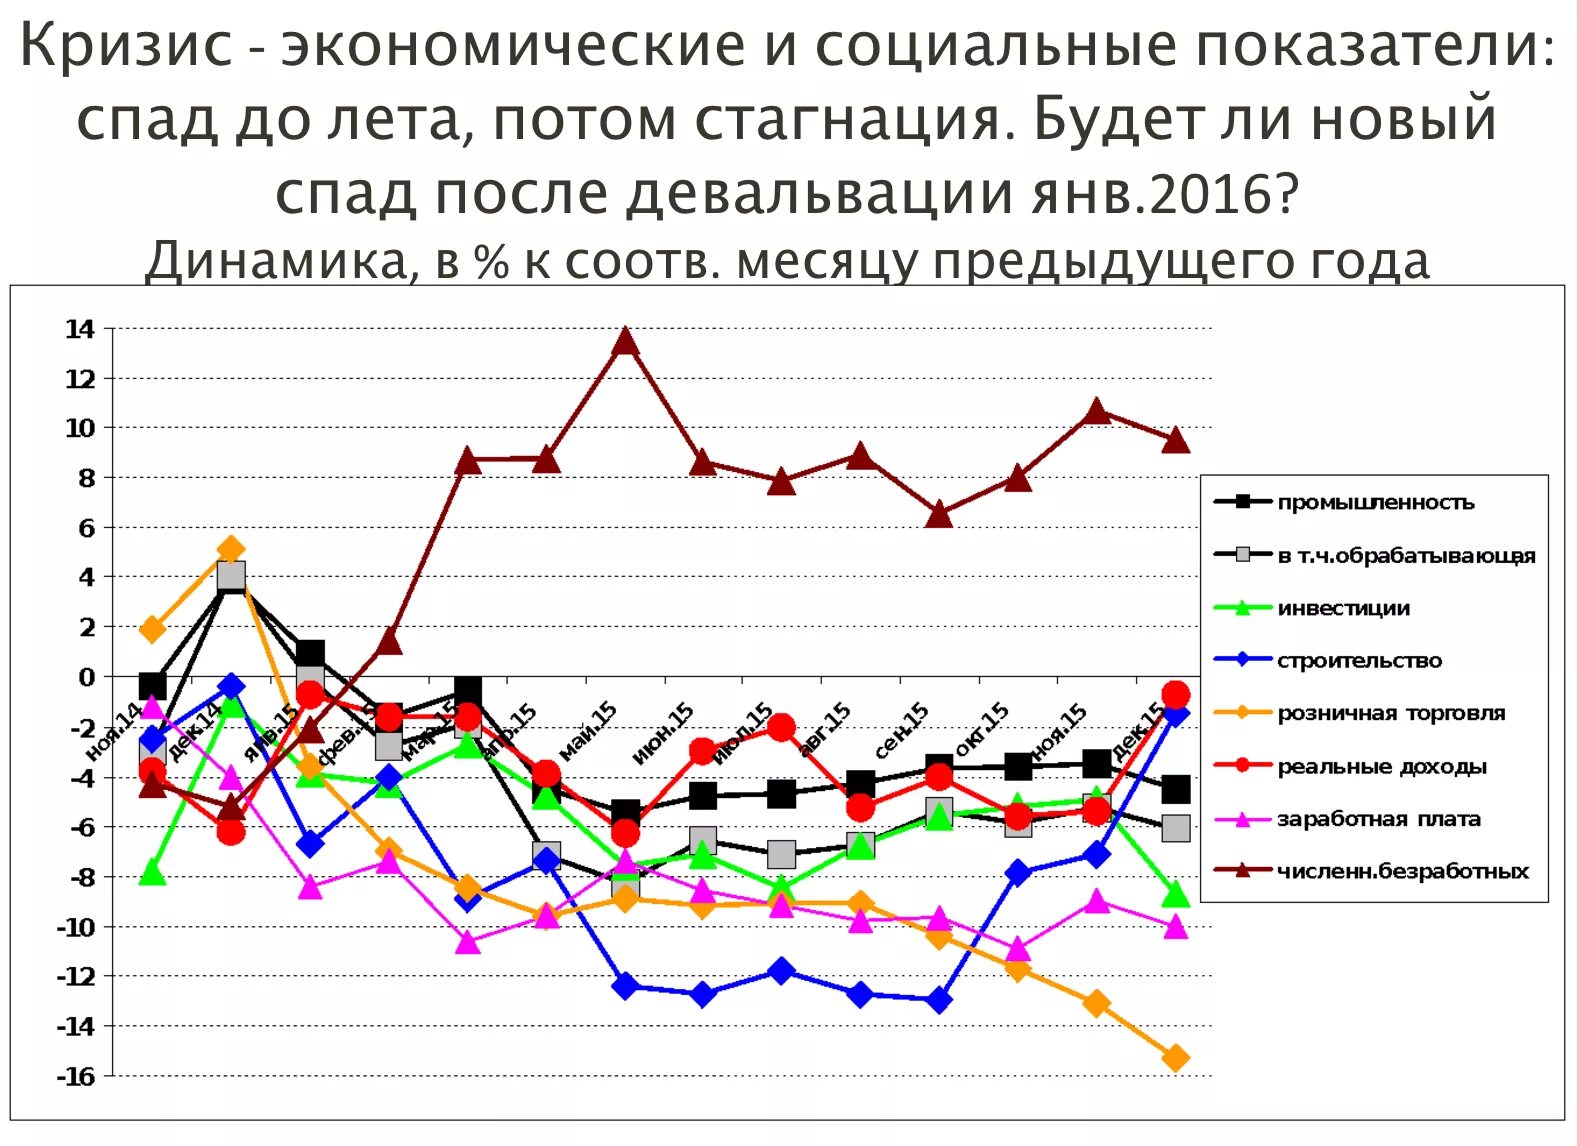 Экономические кризисы в России график. Таблица экономические кризисы в России по годам. Показатели кризиса в экономике. Экономические кризисы в России по годам. Кризисные годы в экономике